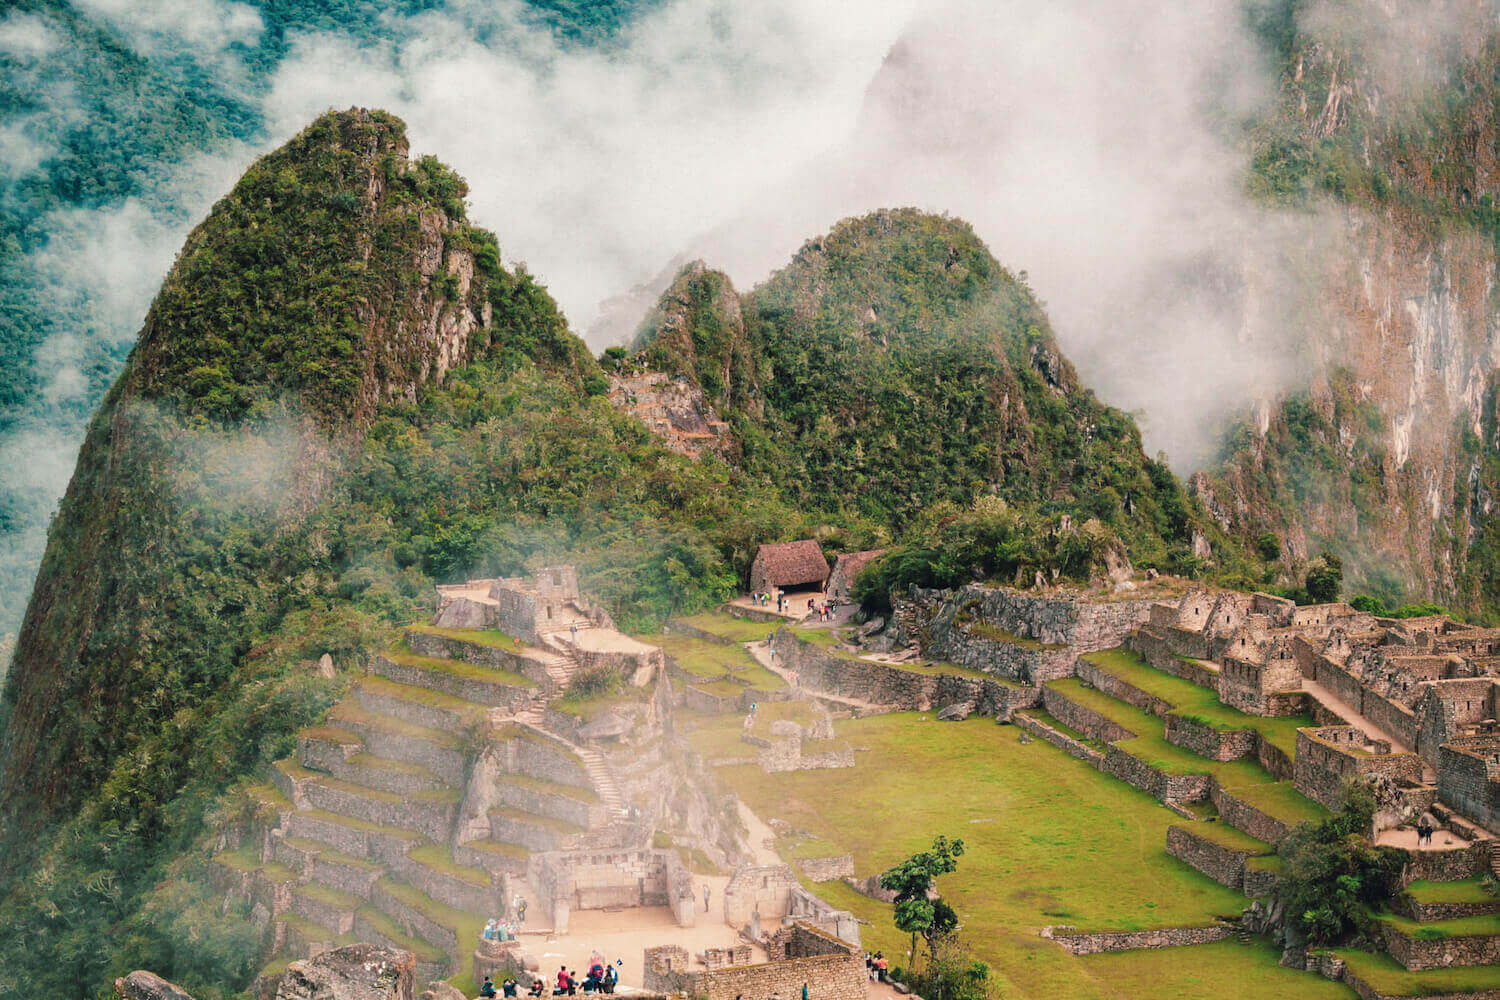 Huchuy Picchu in Machu Picchu